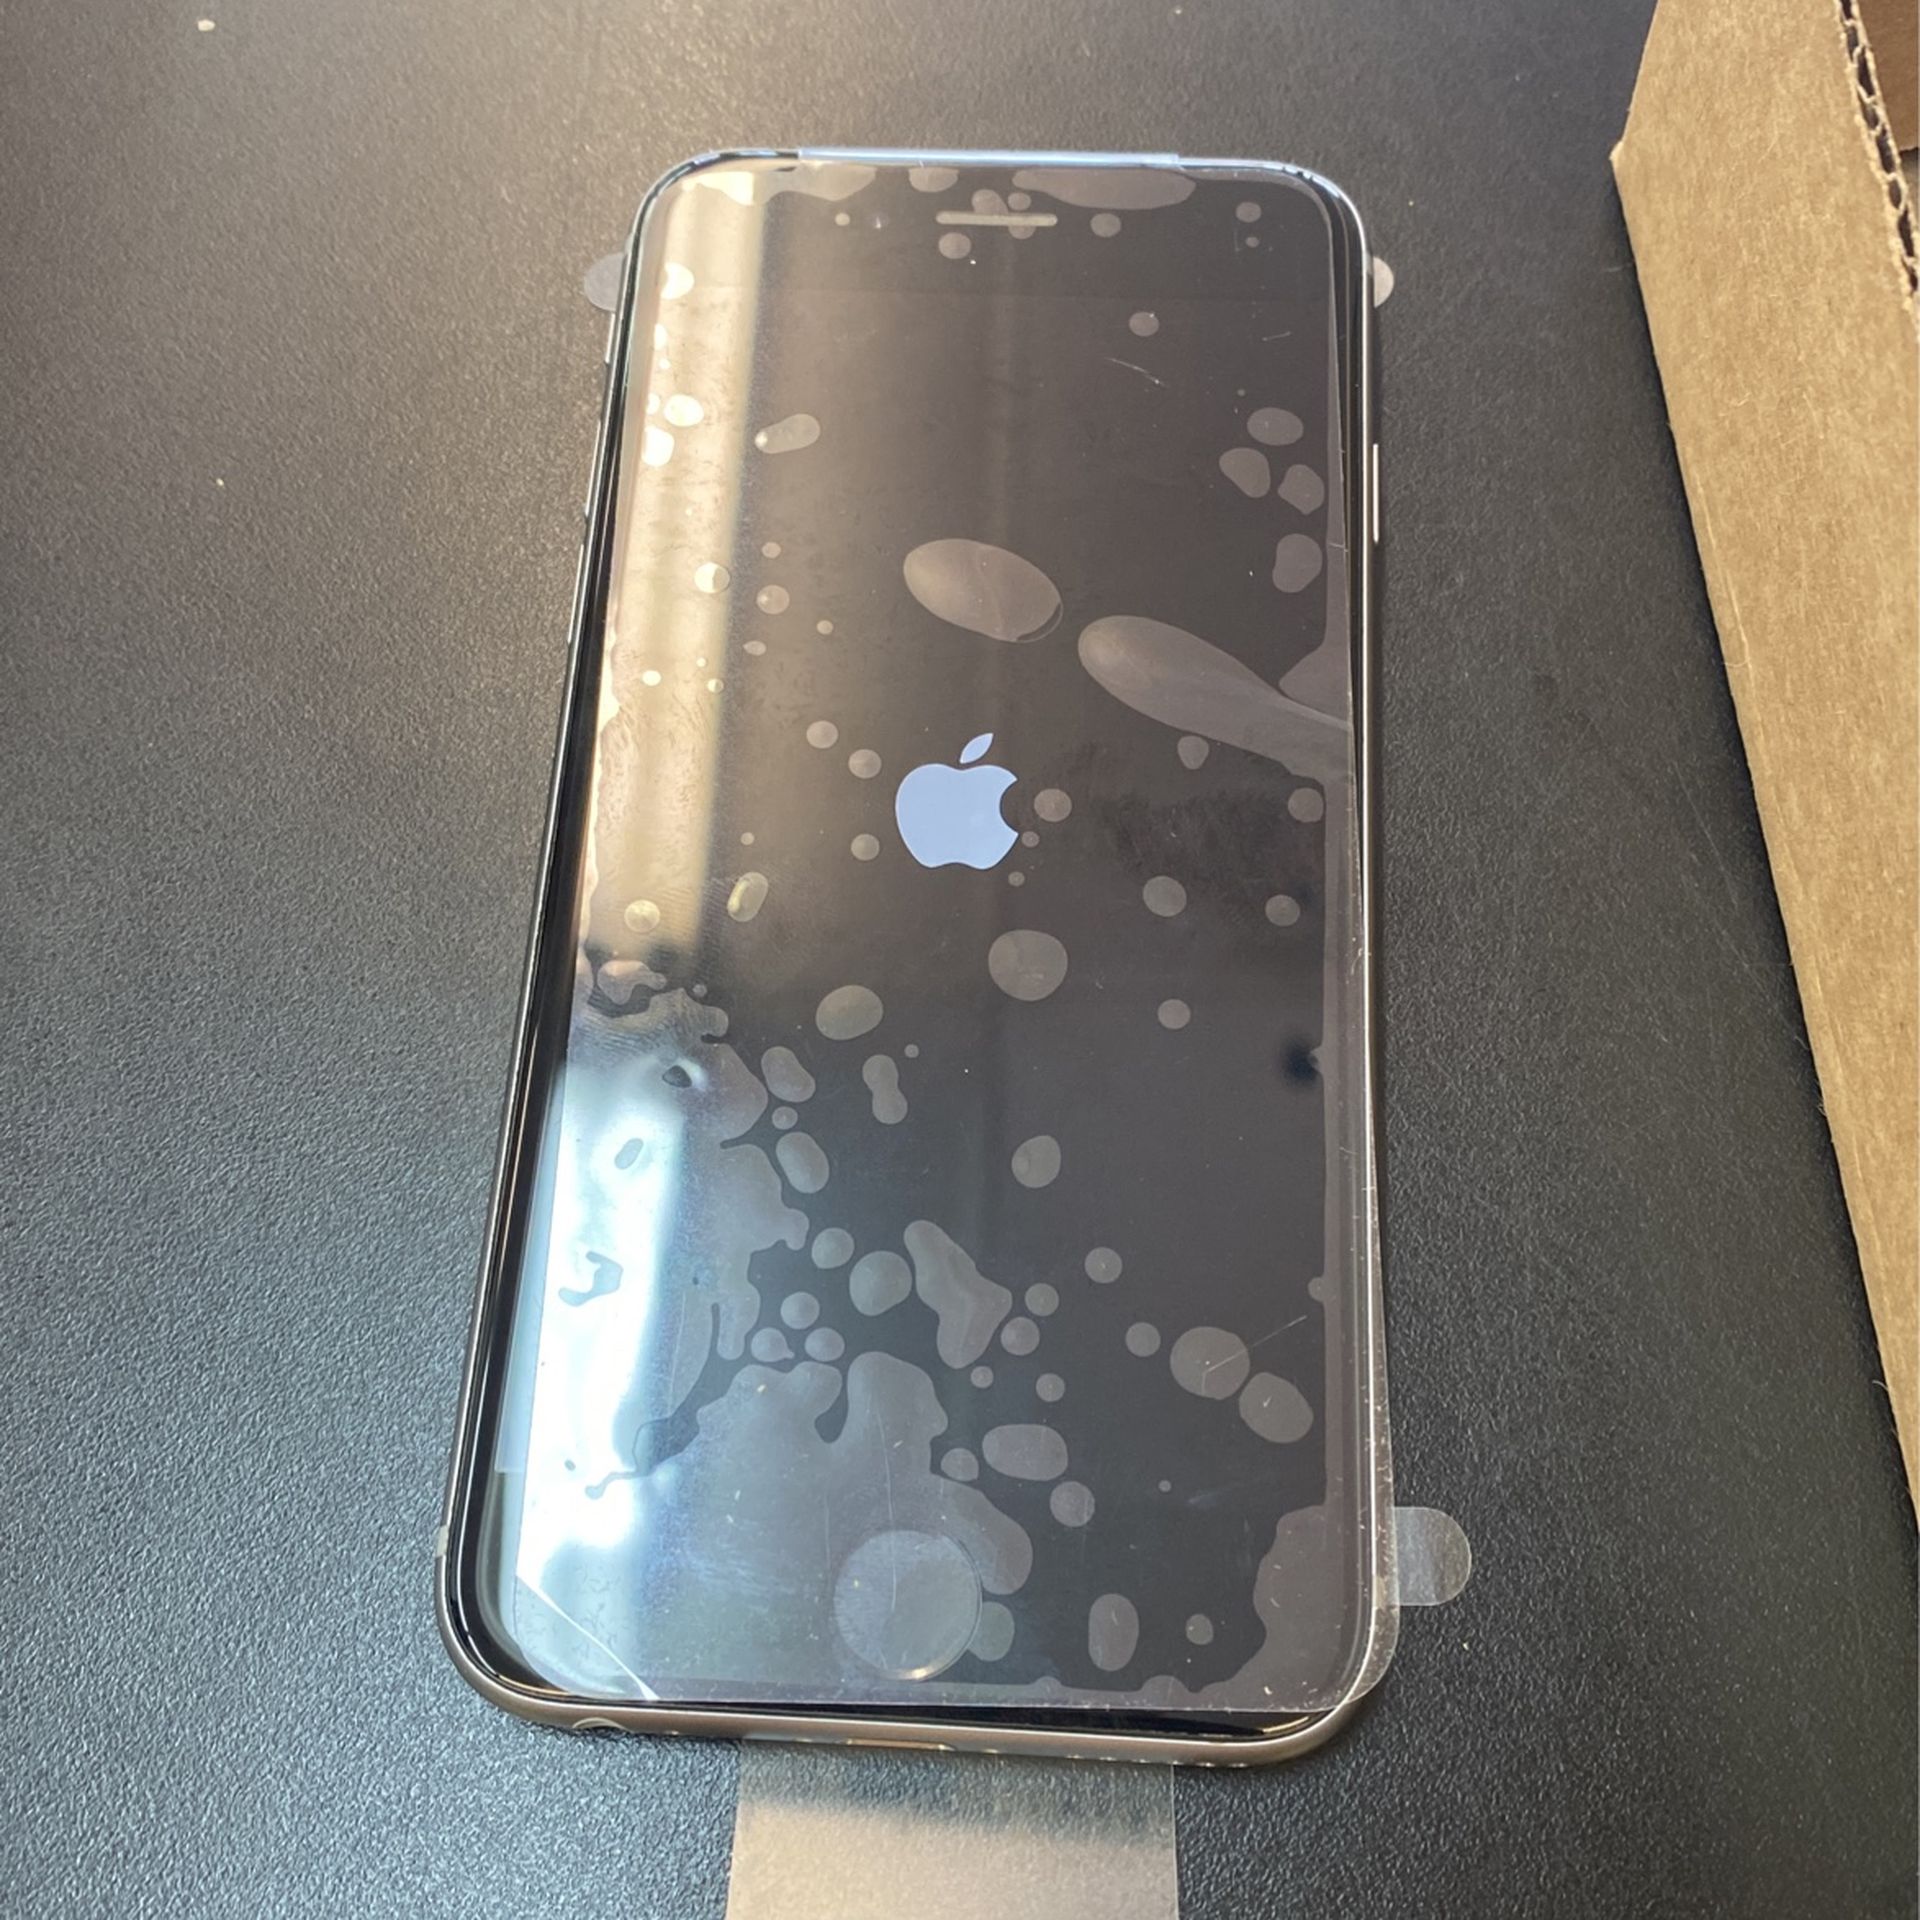 iPhone 6s (gray)